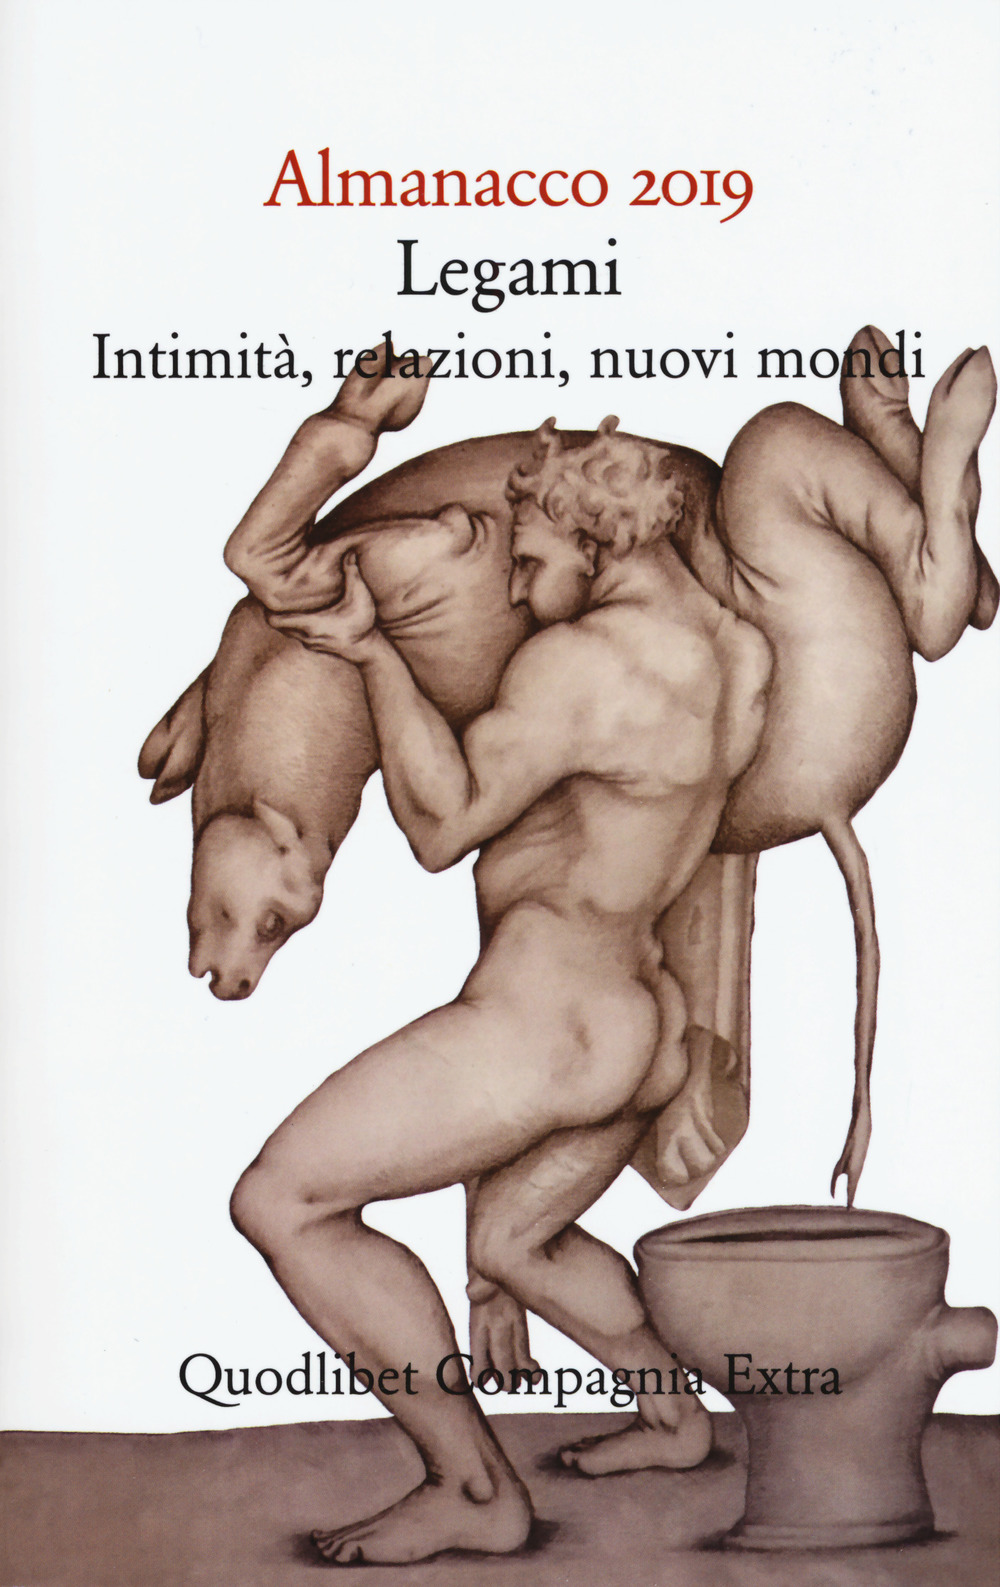 Image of Almanacco 2019. Legami, intimità, relazioni, nuovi mondi